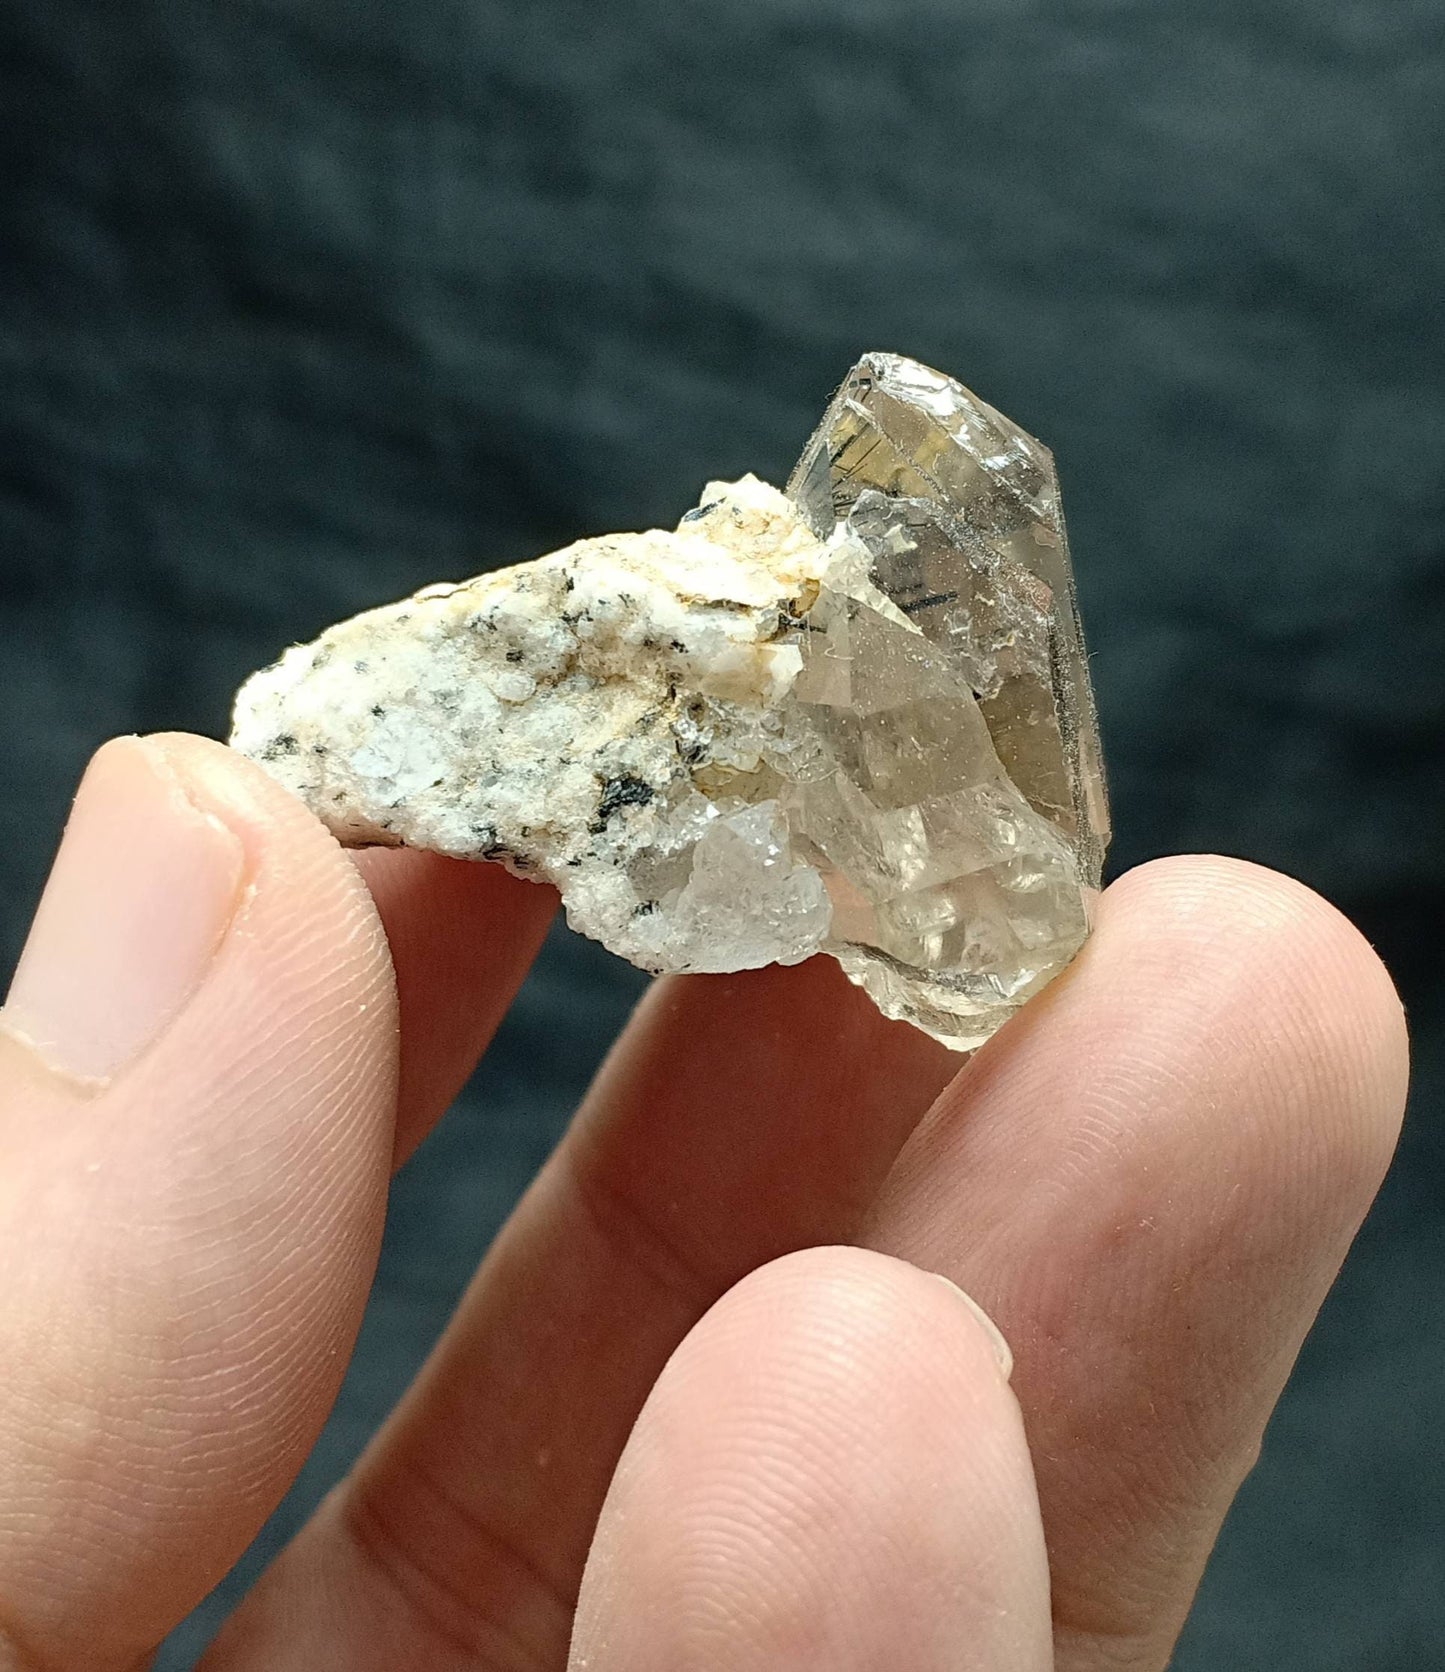 Aegirine included double terminated Quartz Crystals on matrix 26 grams